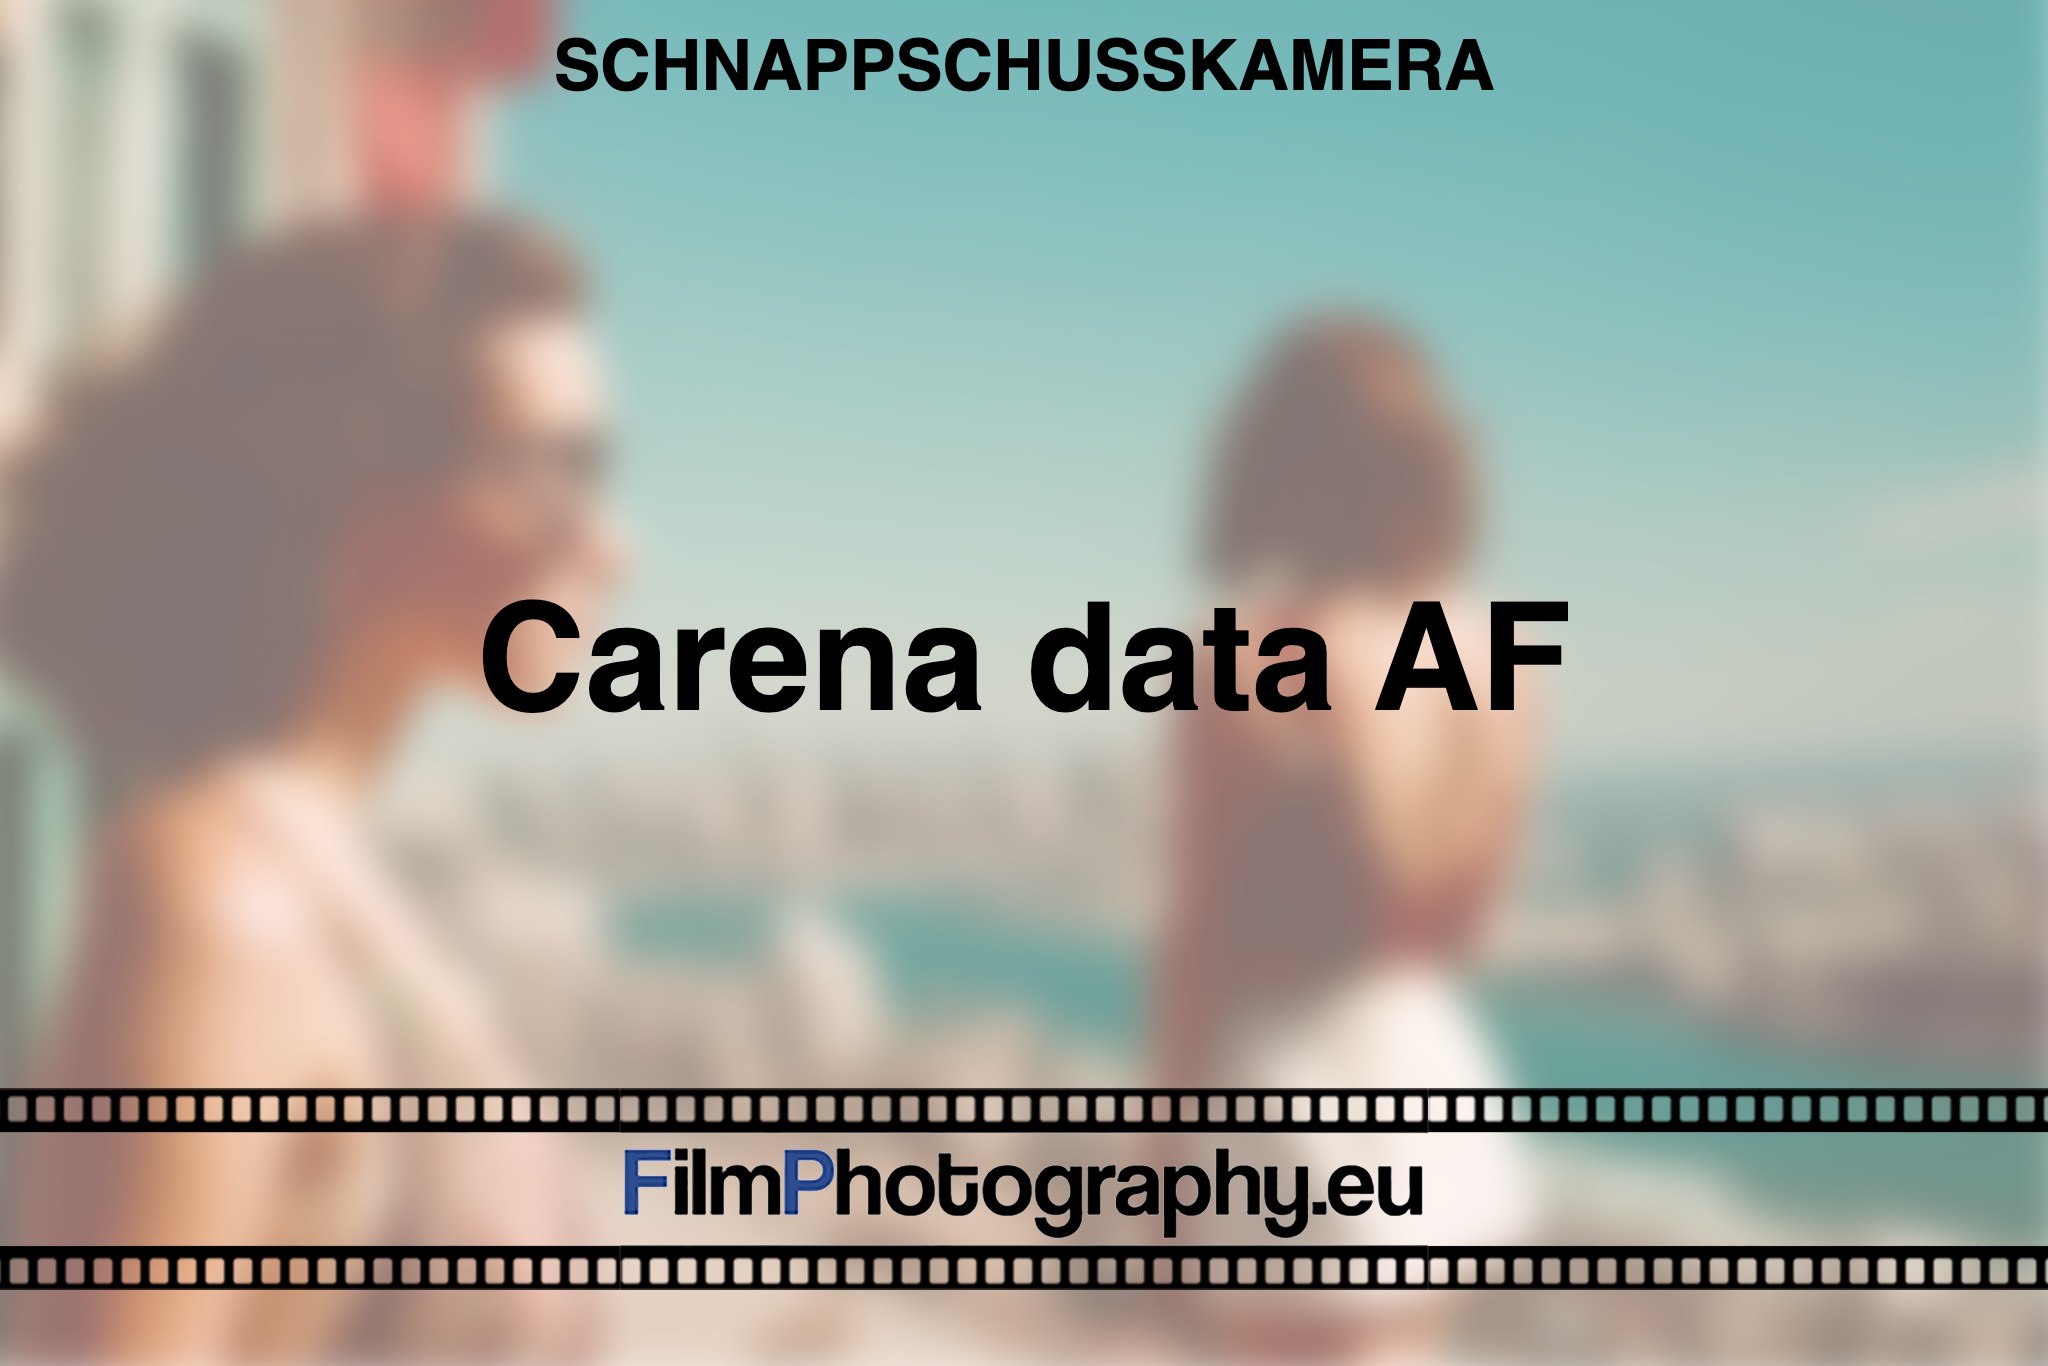 carena-data-af-schnappschusskamera-bnv